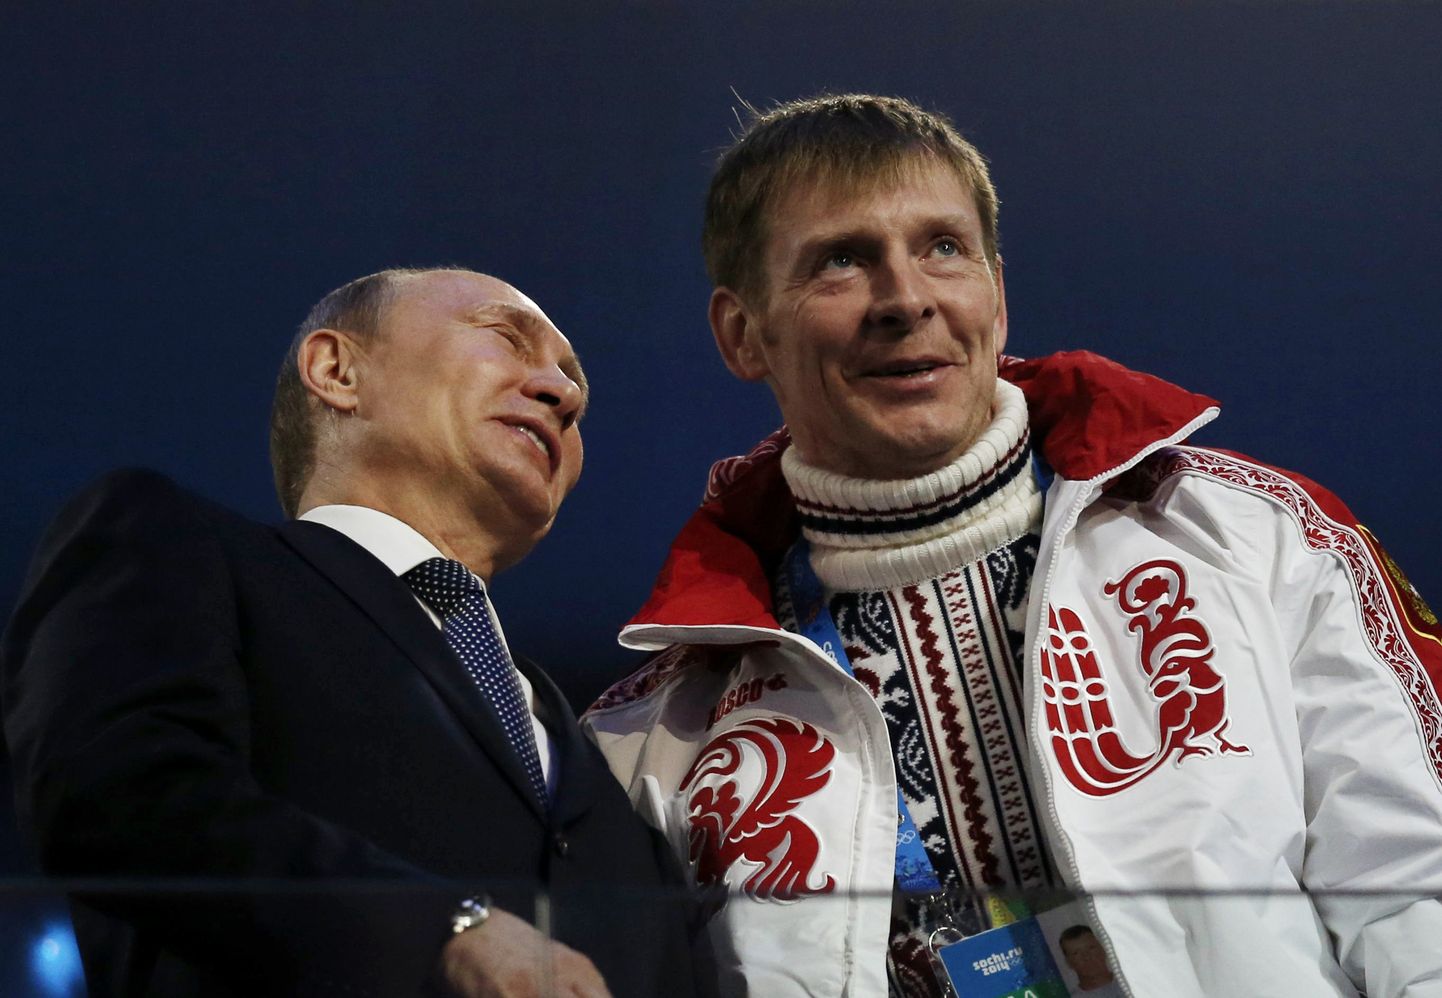 Välismaailma silmis on Aleksandr Zubkov dopingupatune. Ent mis Zubkovil sellest, kui kogu Venemaa eesotsas presidendi Vladimir Putiniga peab teda ikka kahekordseks olümpiavõitjaks...